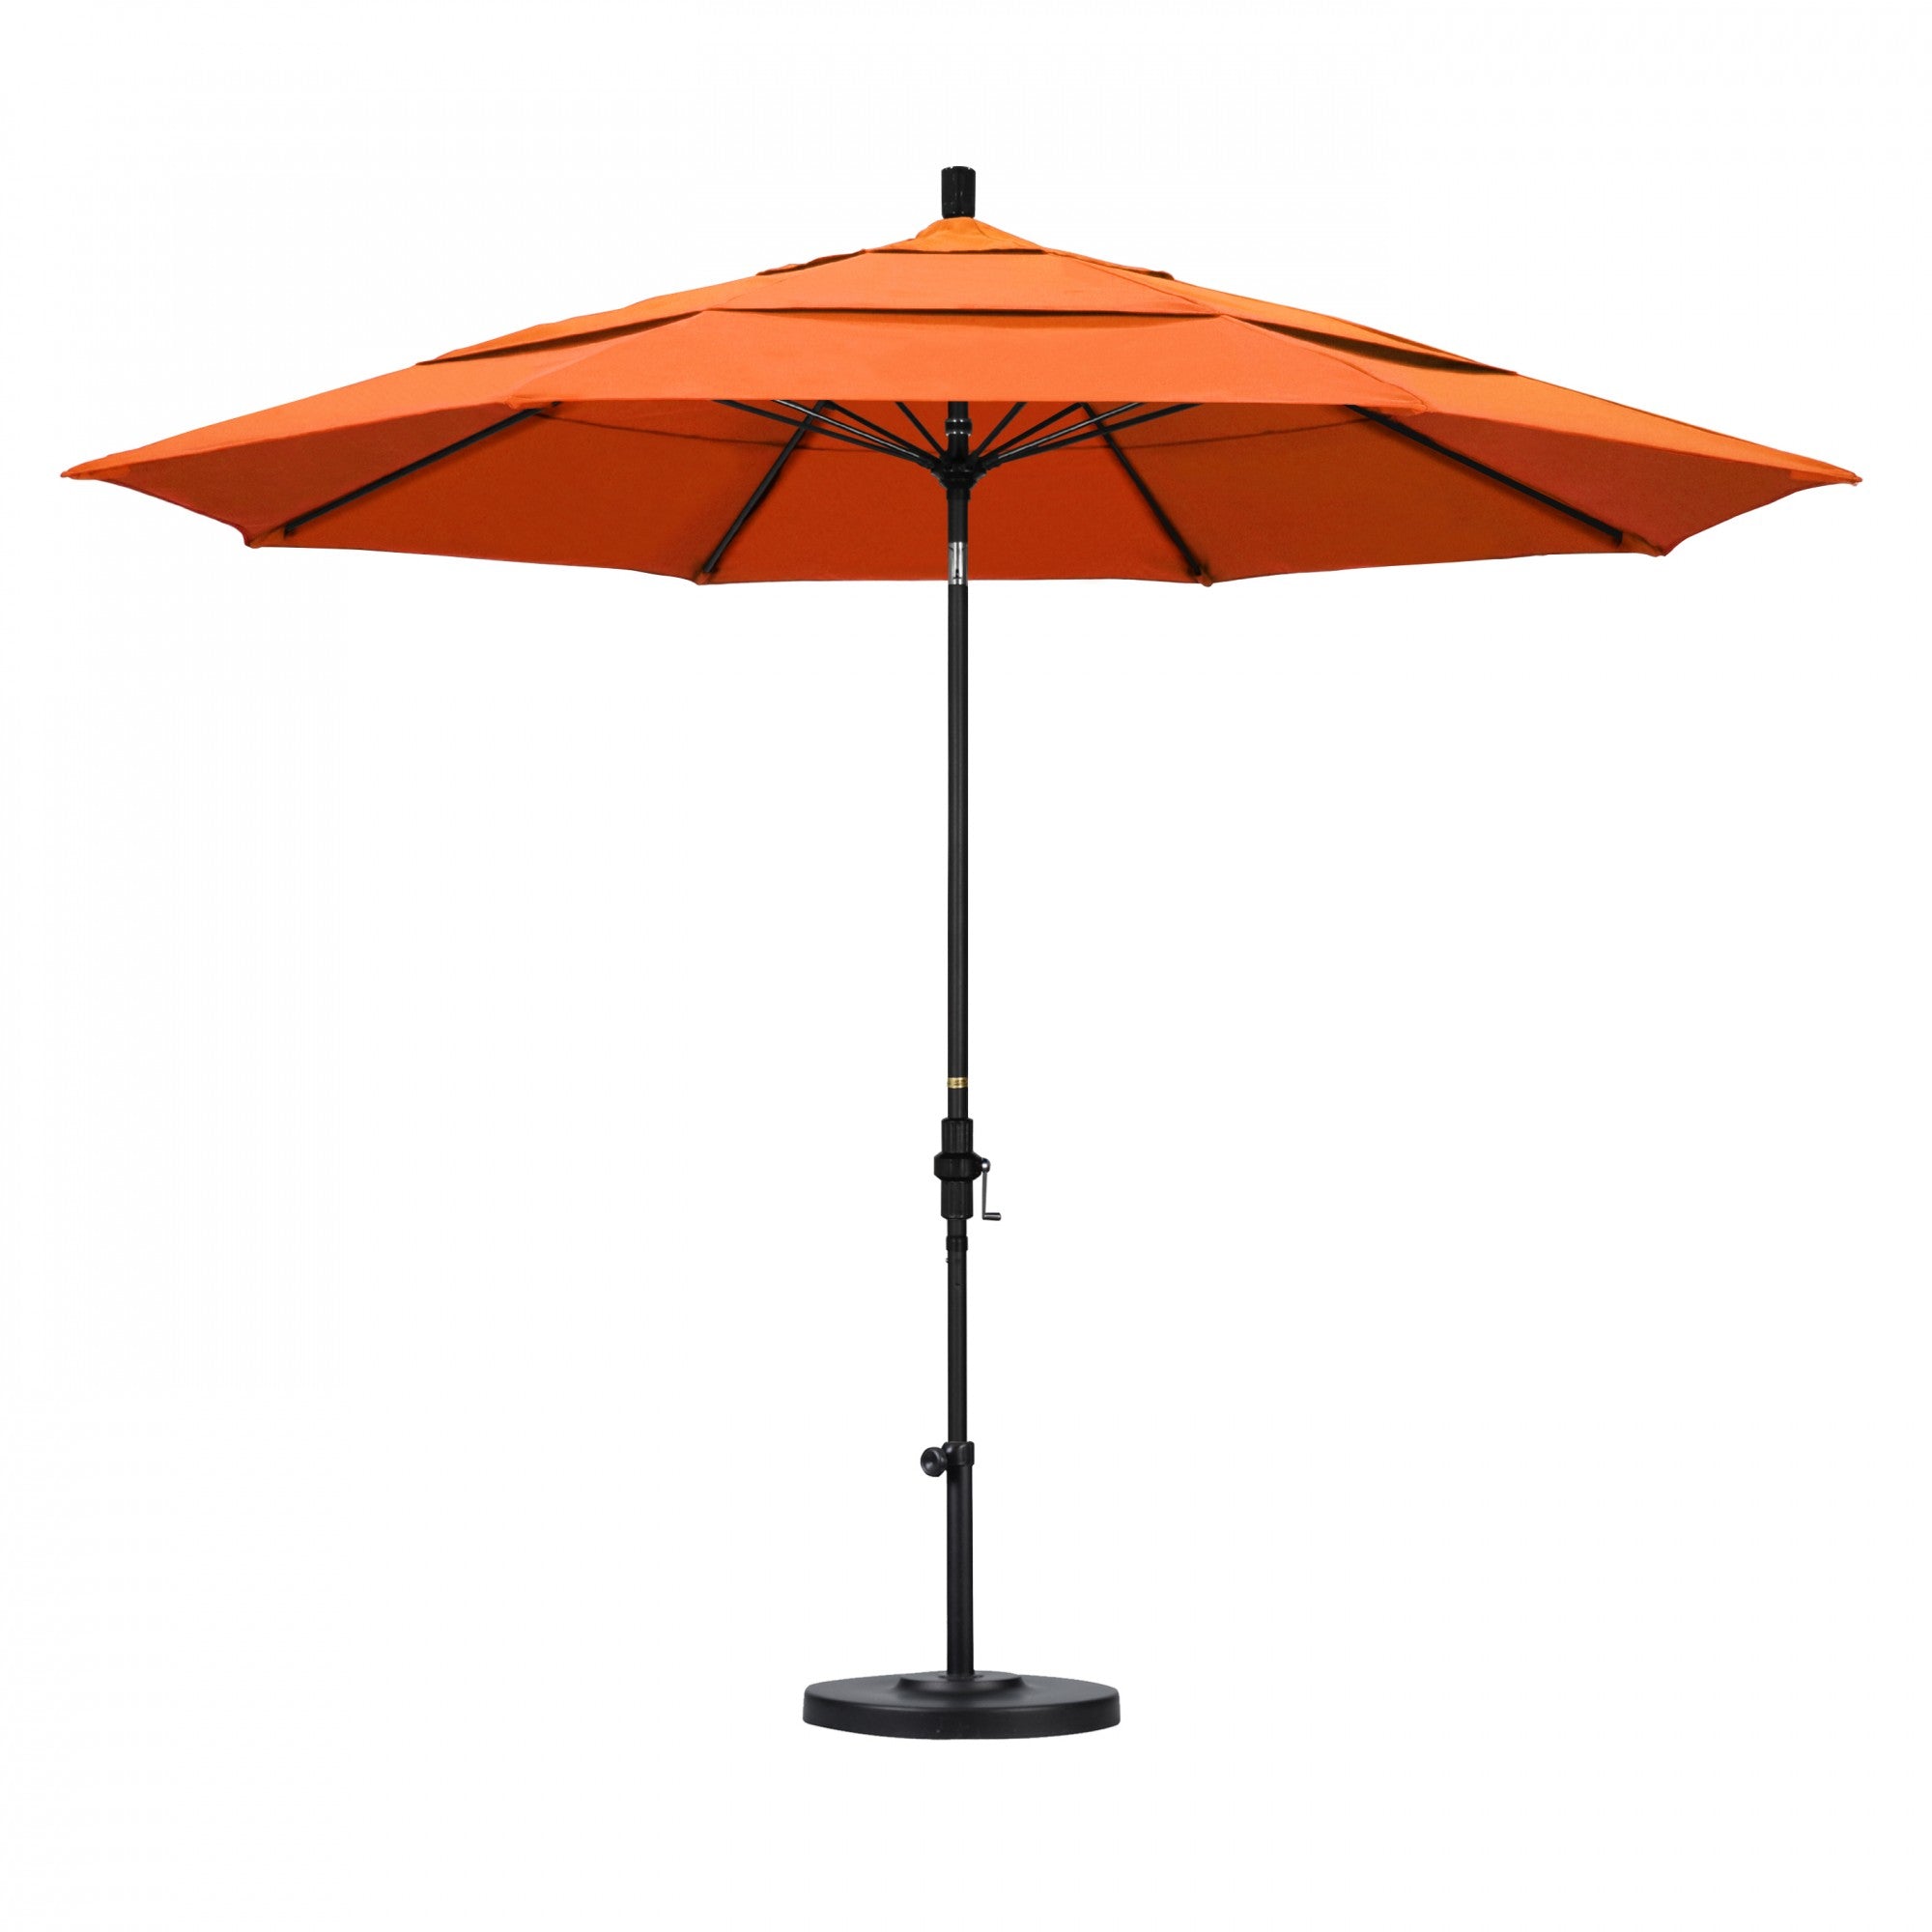 California Umbrella - 11' - Patio Umbrella Umbrella - Aluminum Pole - Tangerine - Sunbrella  - GSCUF118705-5406-DWV